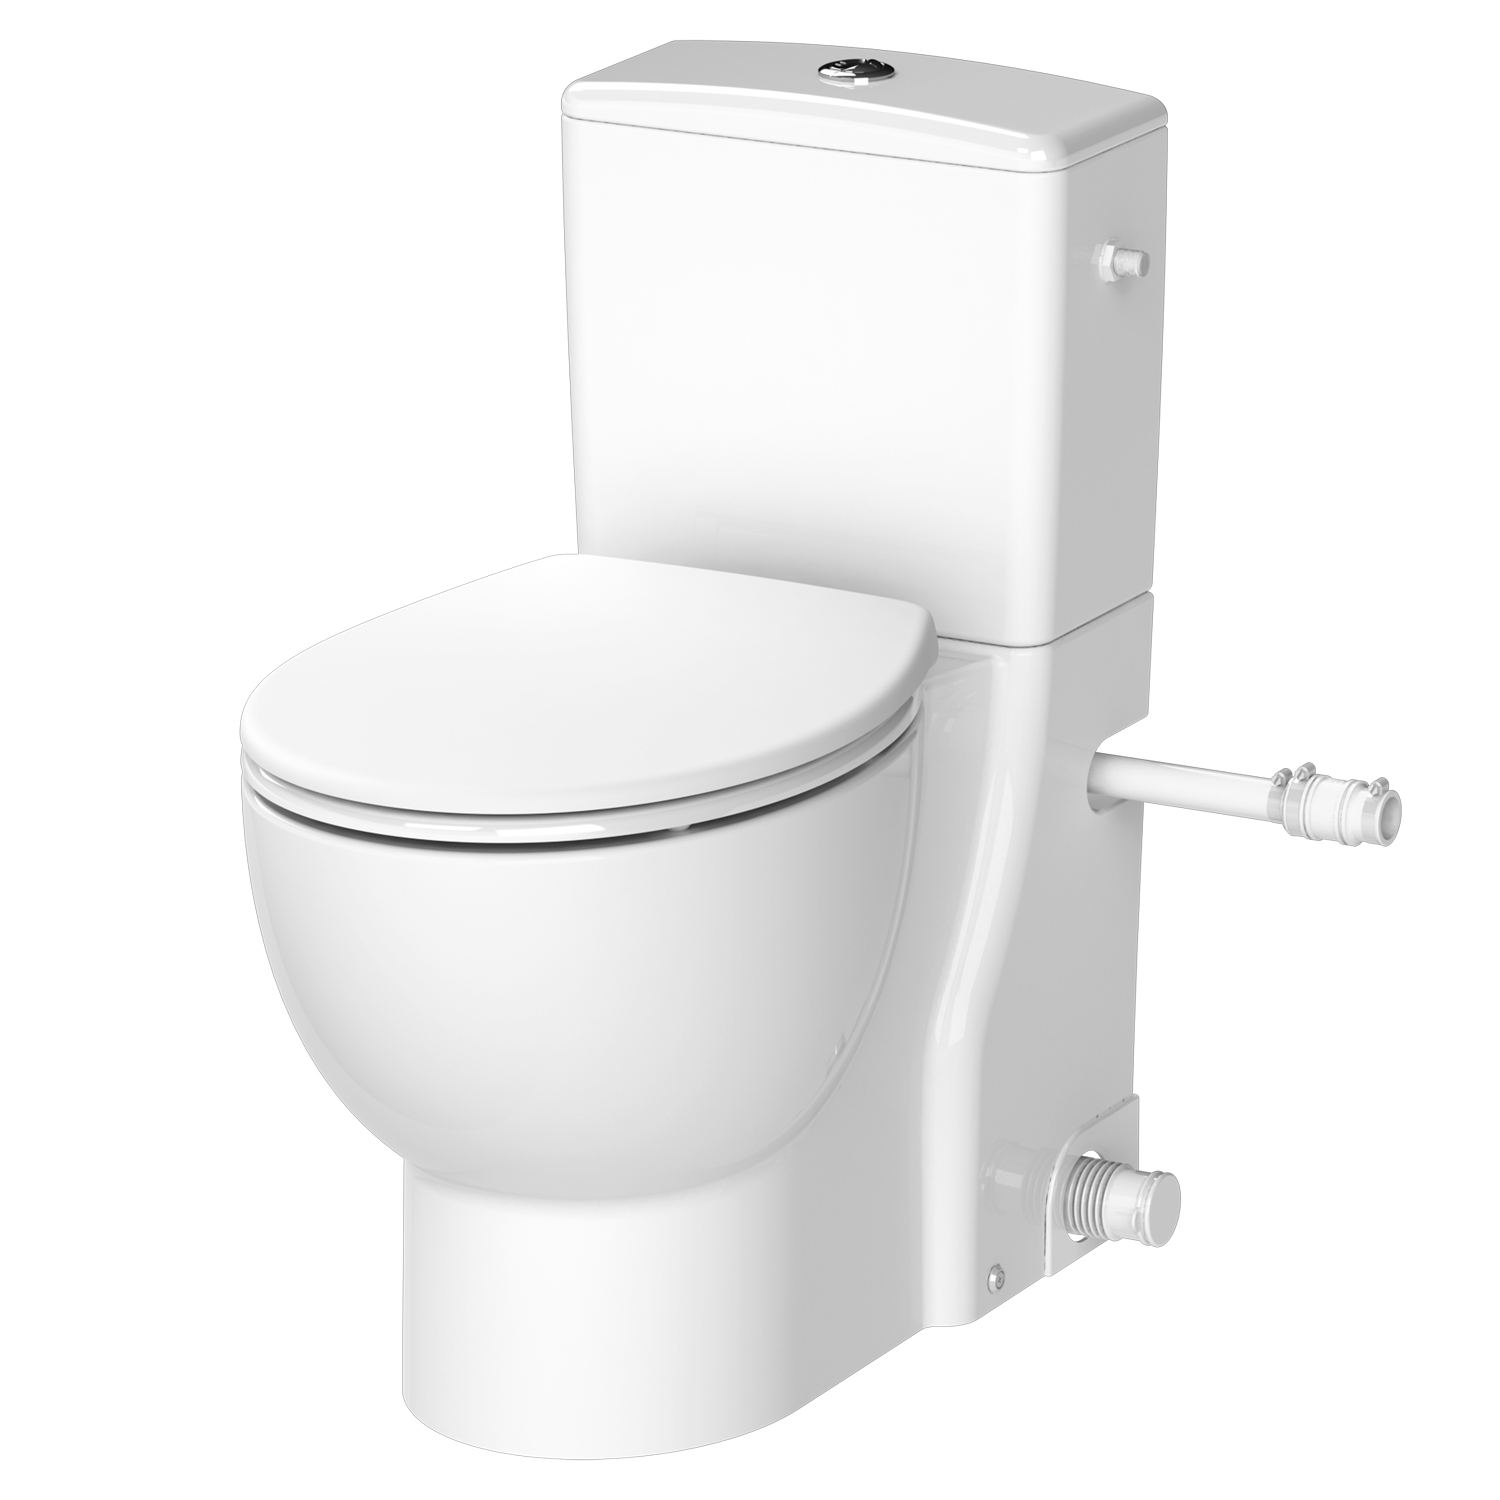 New Saniflush extends Saniflo WC range